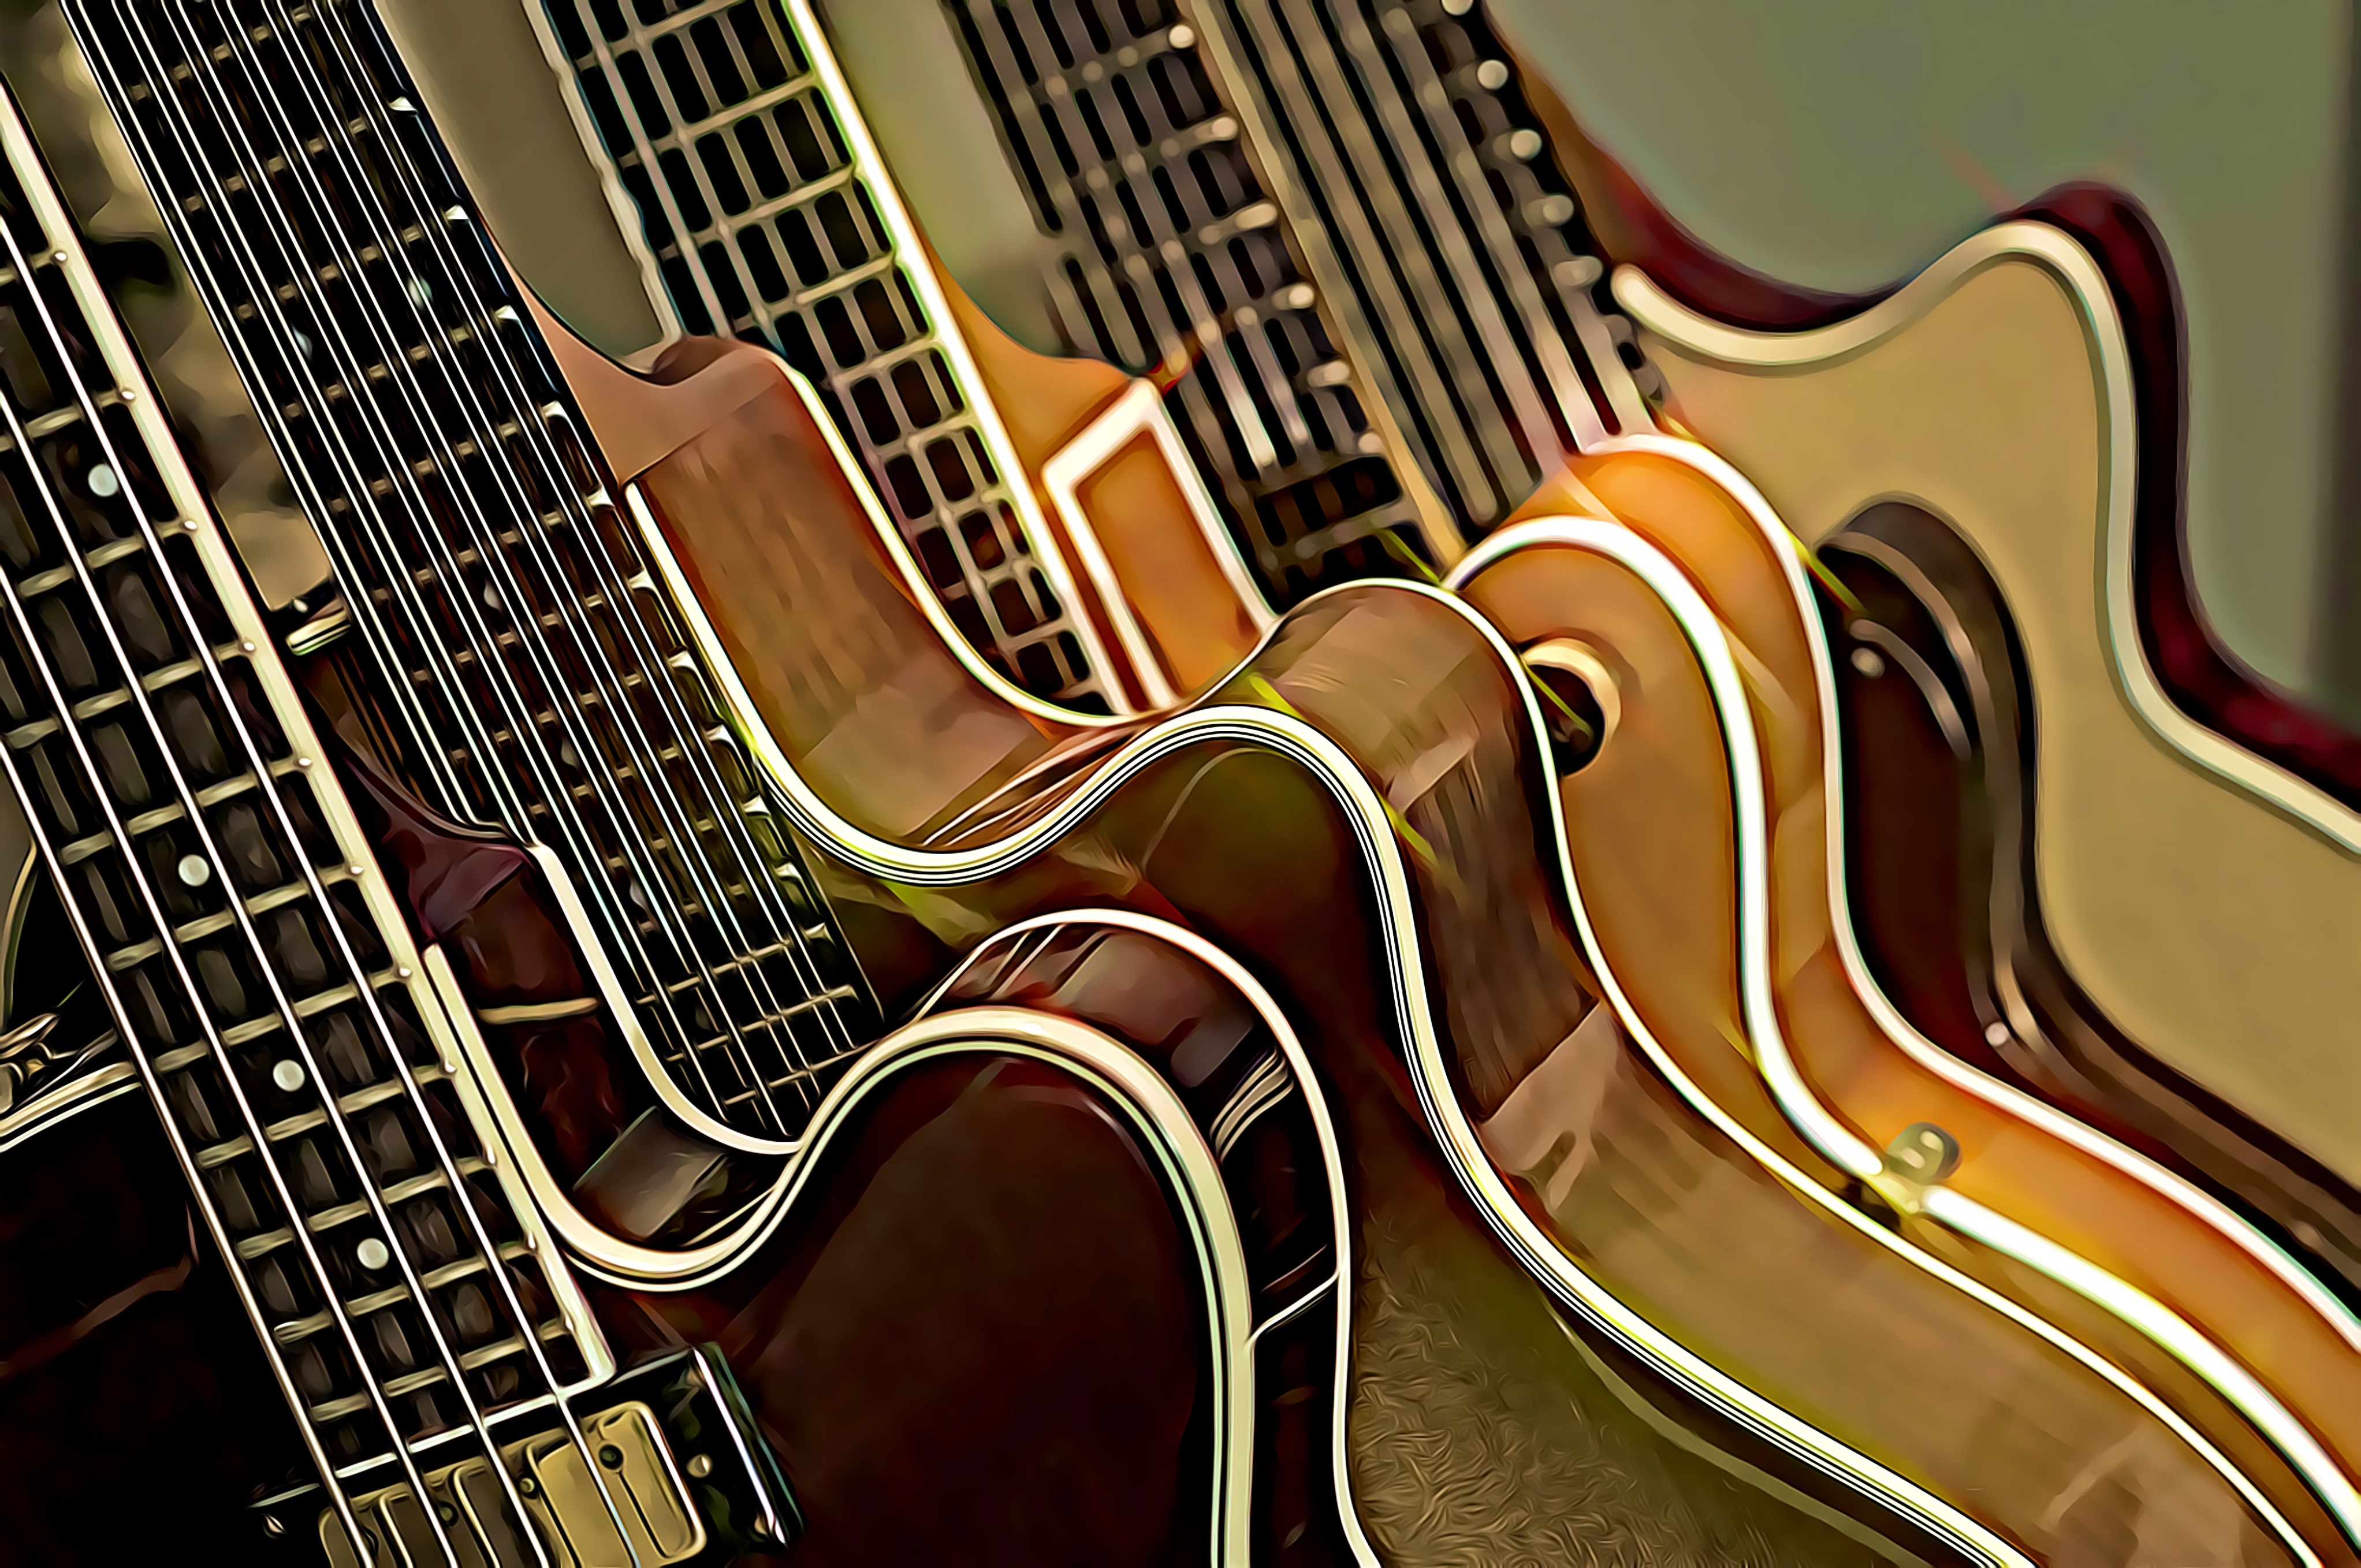 Buncha guitars CARTOONED